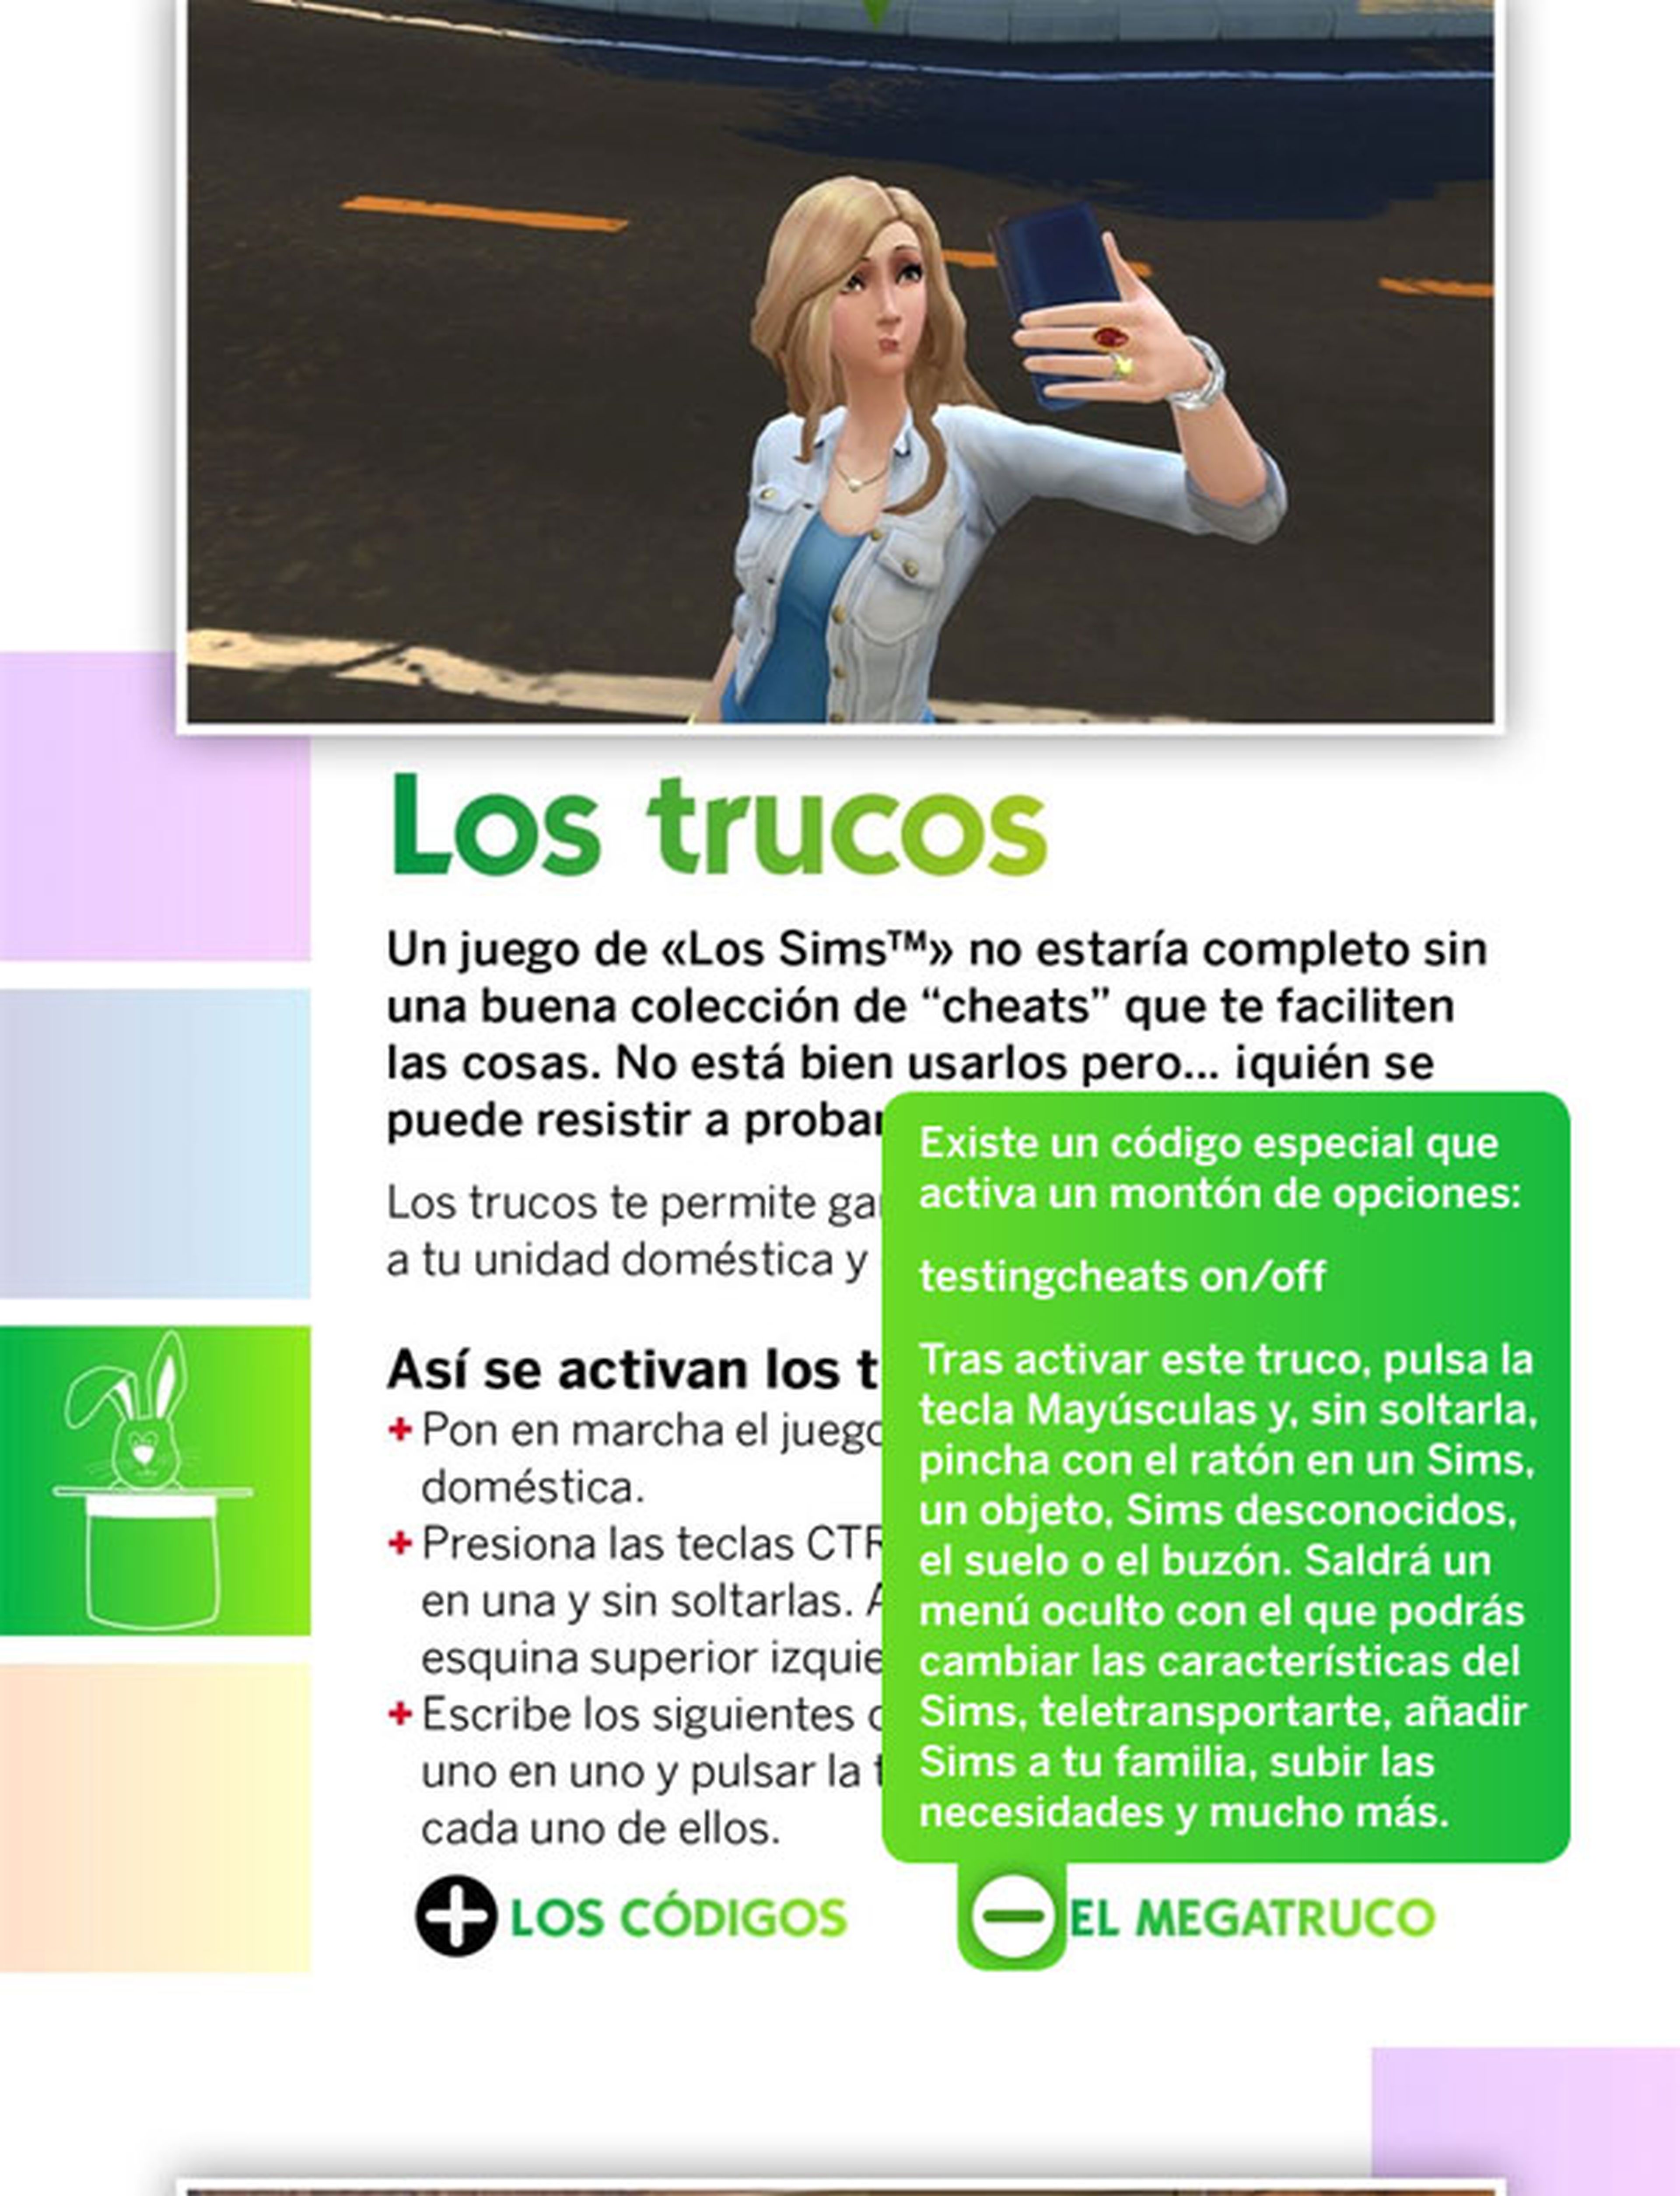 Revista Oficial Los Sims: nuevo número disponible gratis